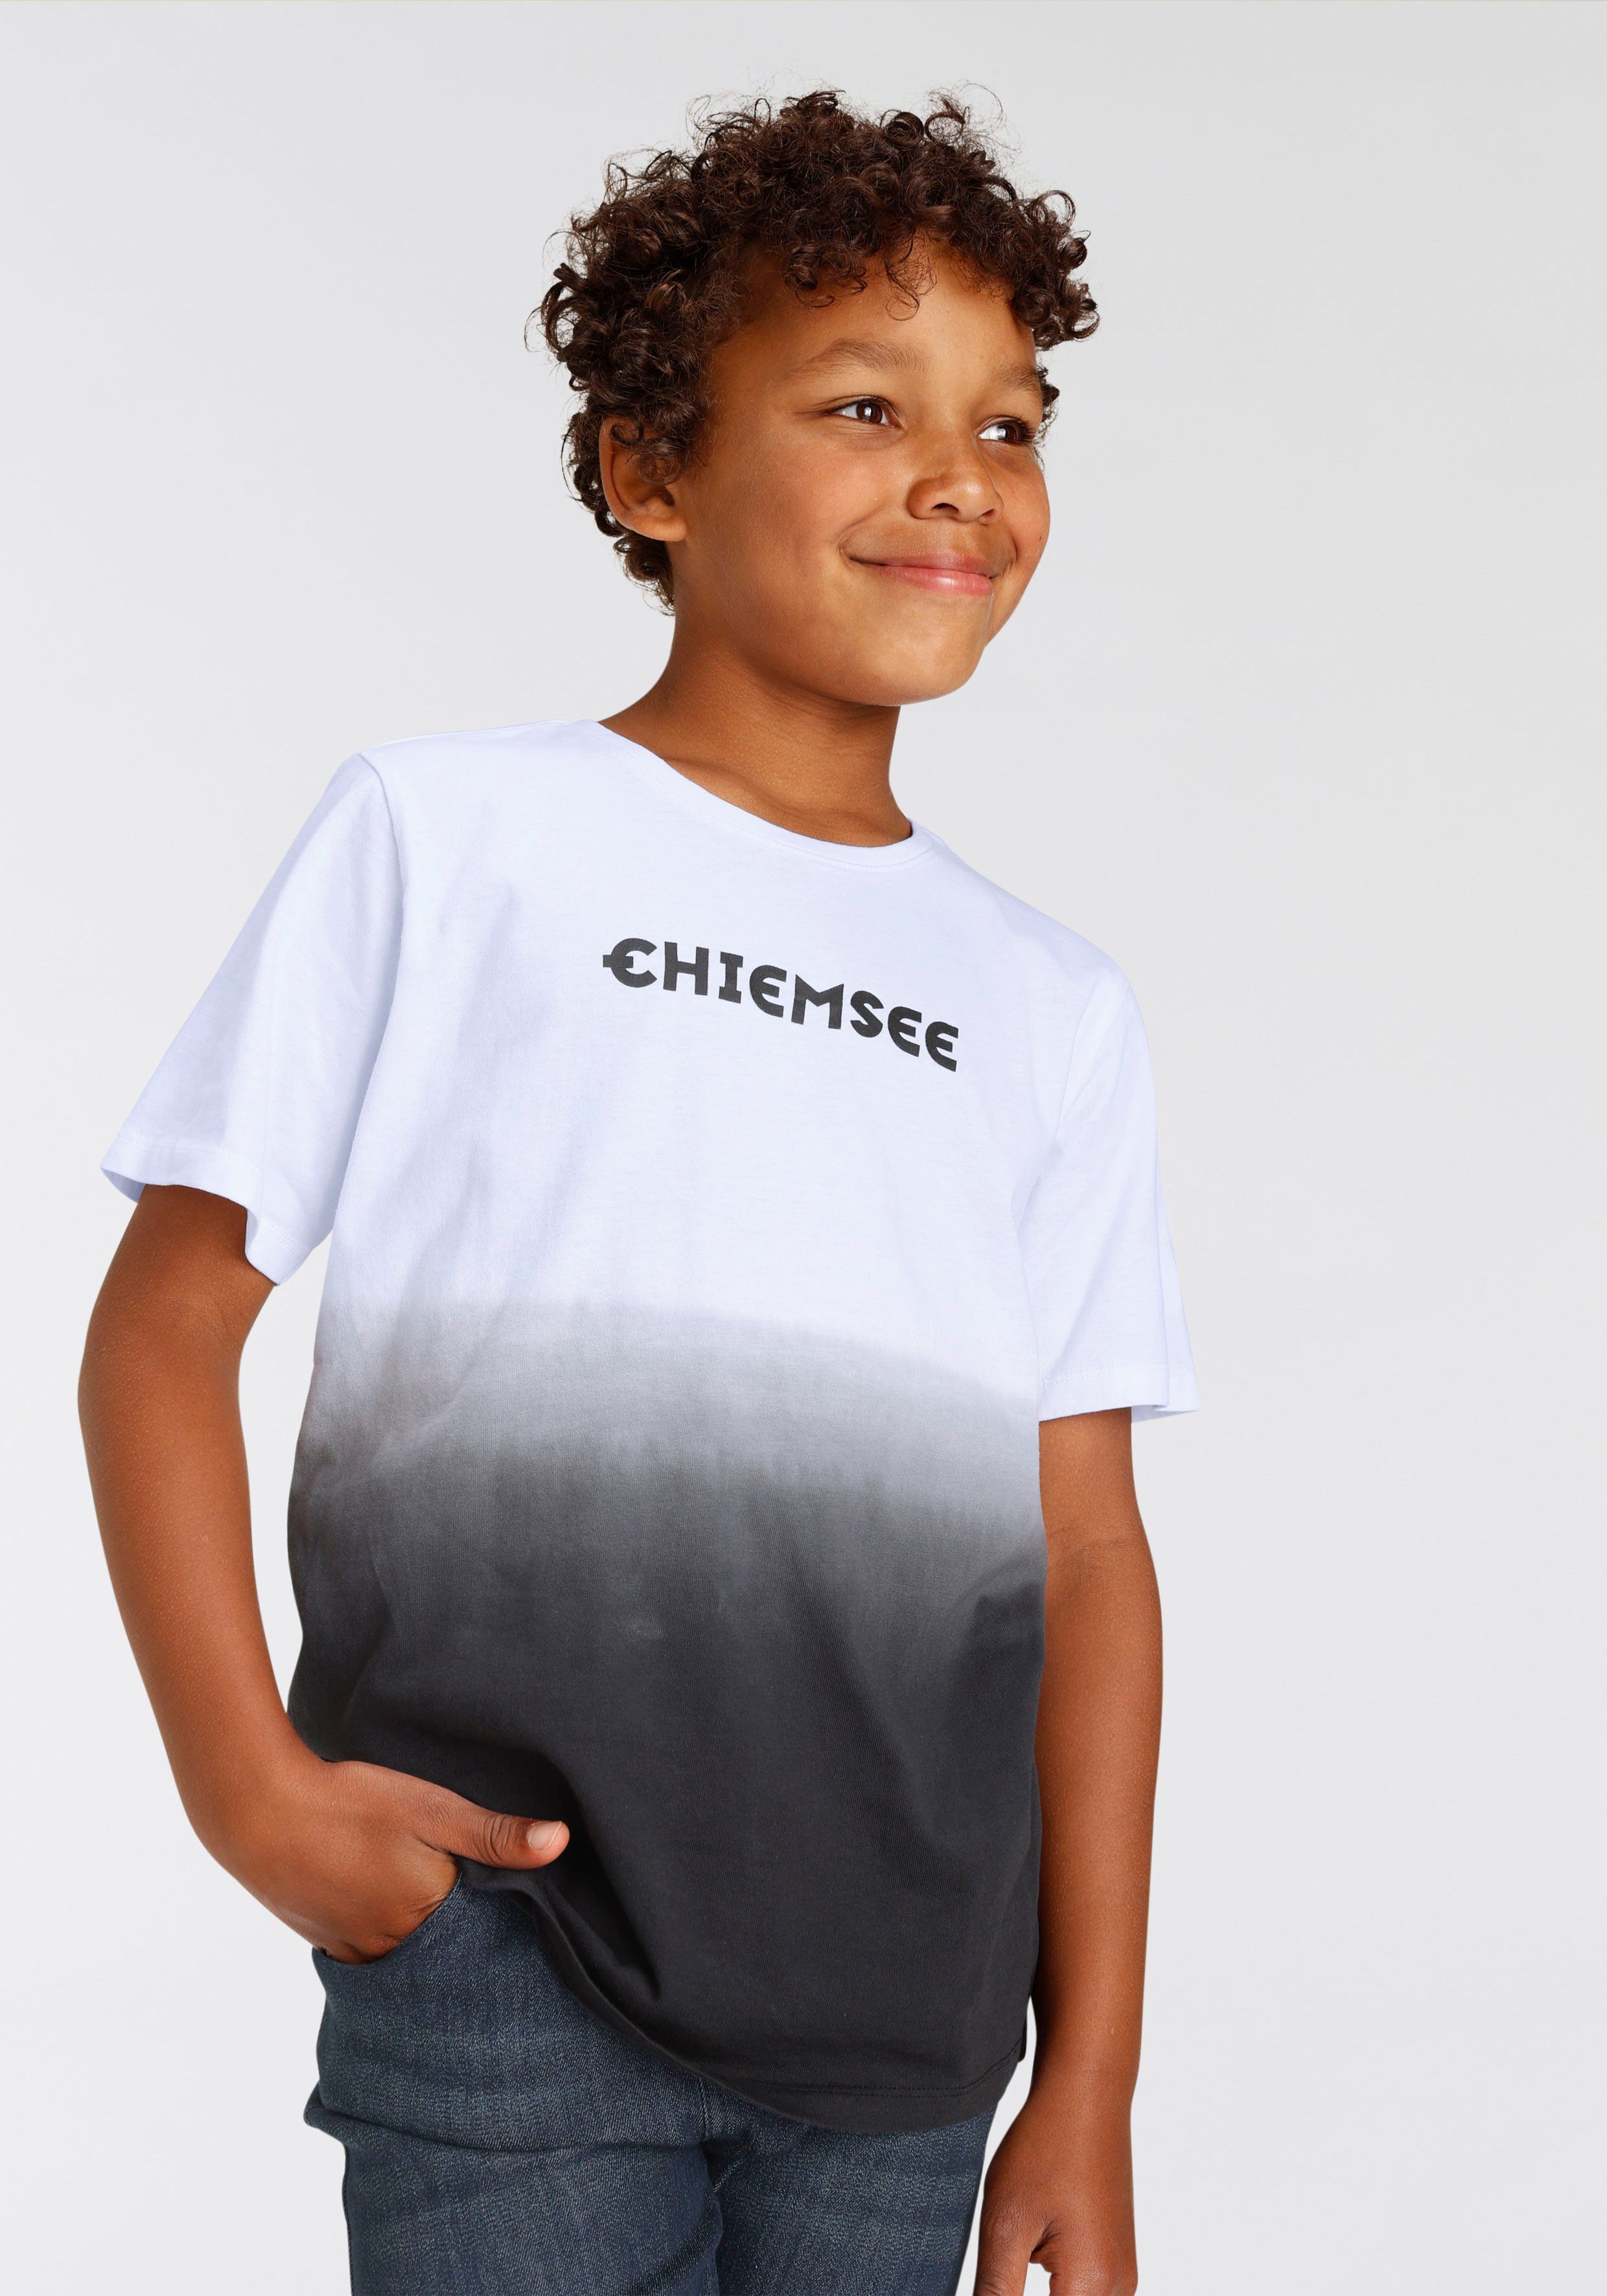 T-Shirt Farbverlauf Chiemsee Modischer